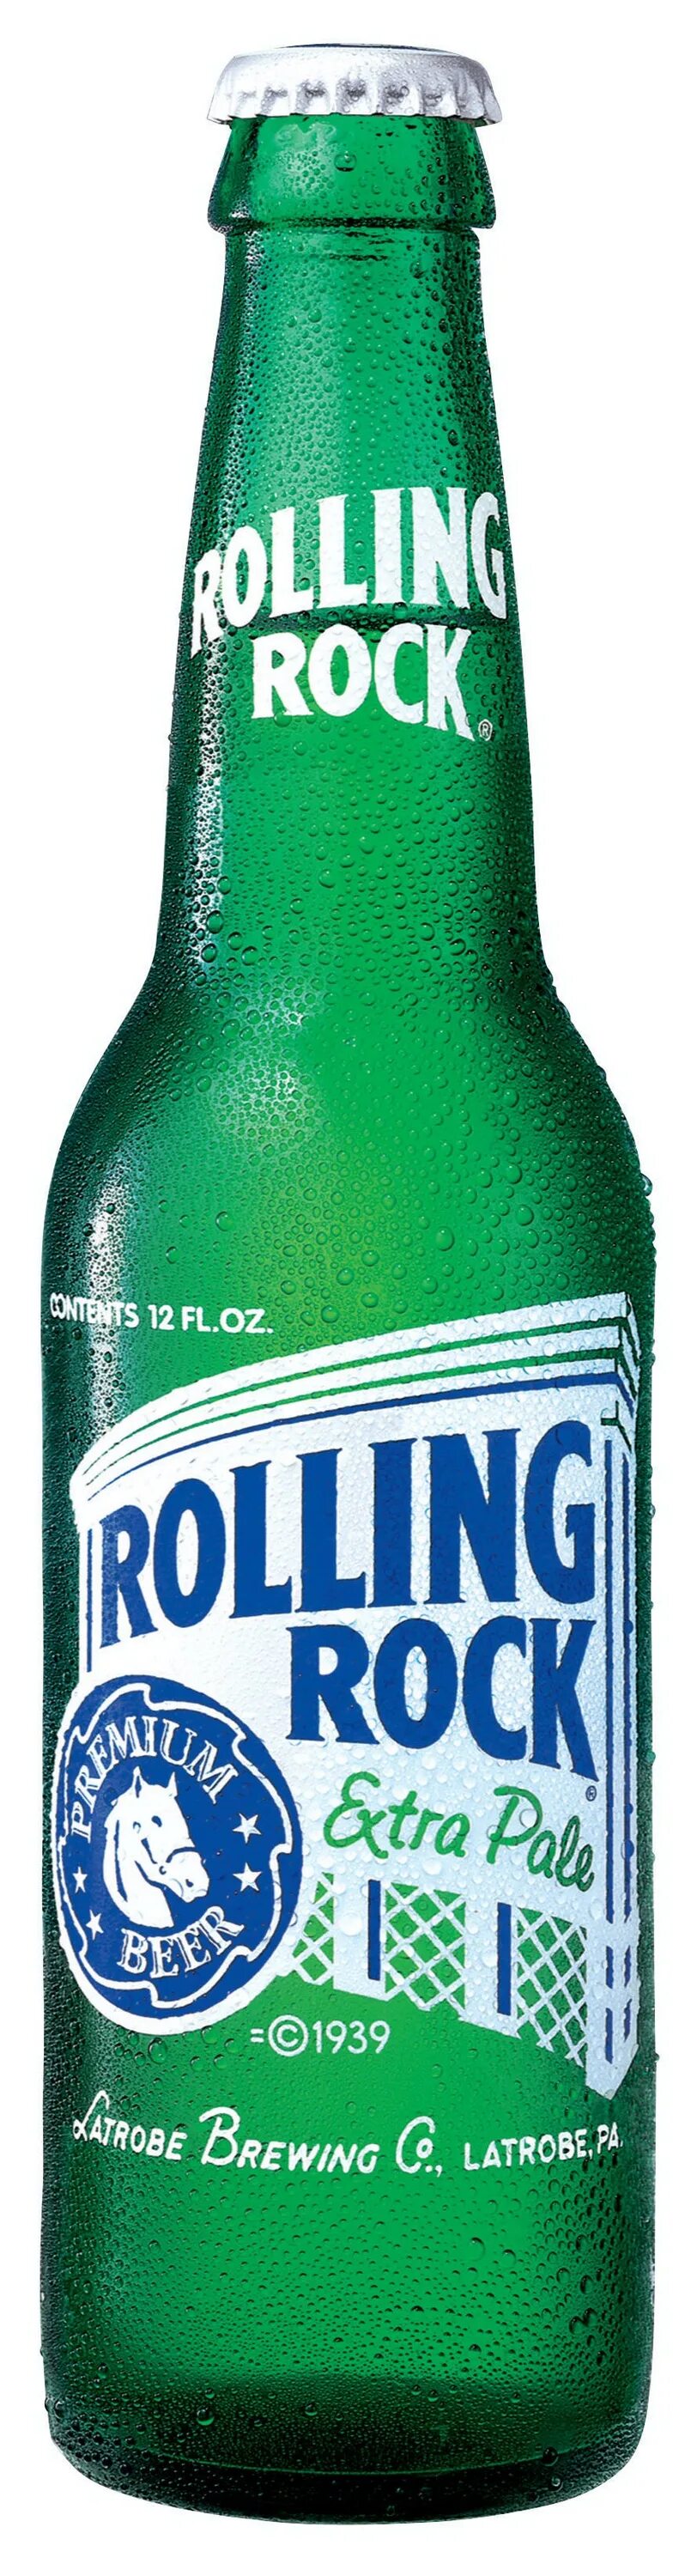 Roll rolling рок. Пиво Rolling. Rolling Rock. Пиво Rock. Американское пиво.